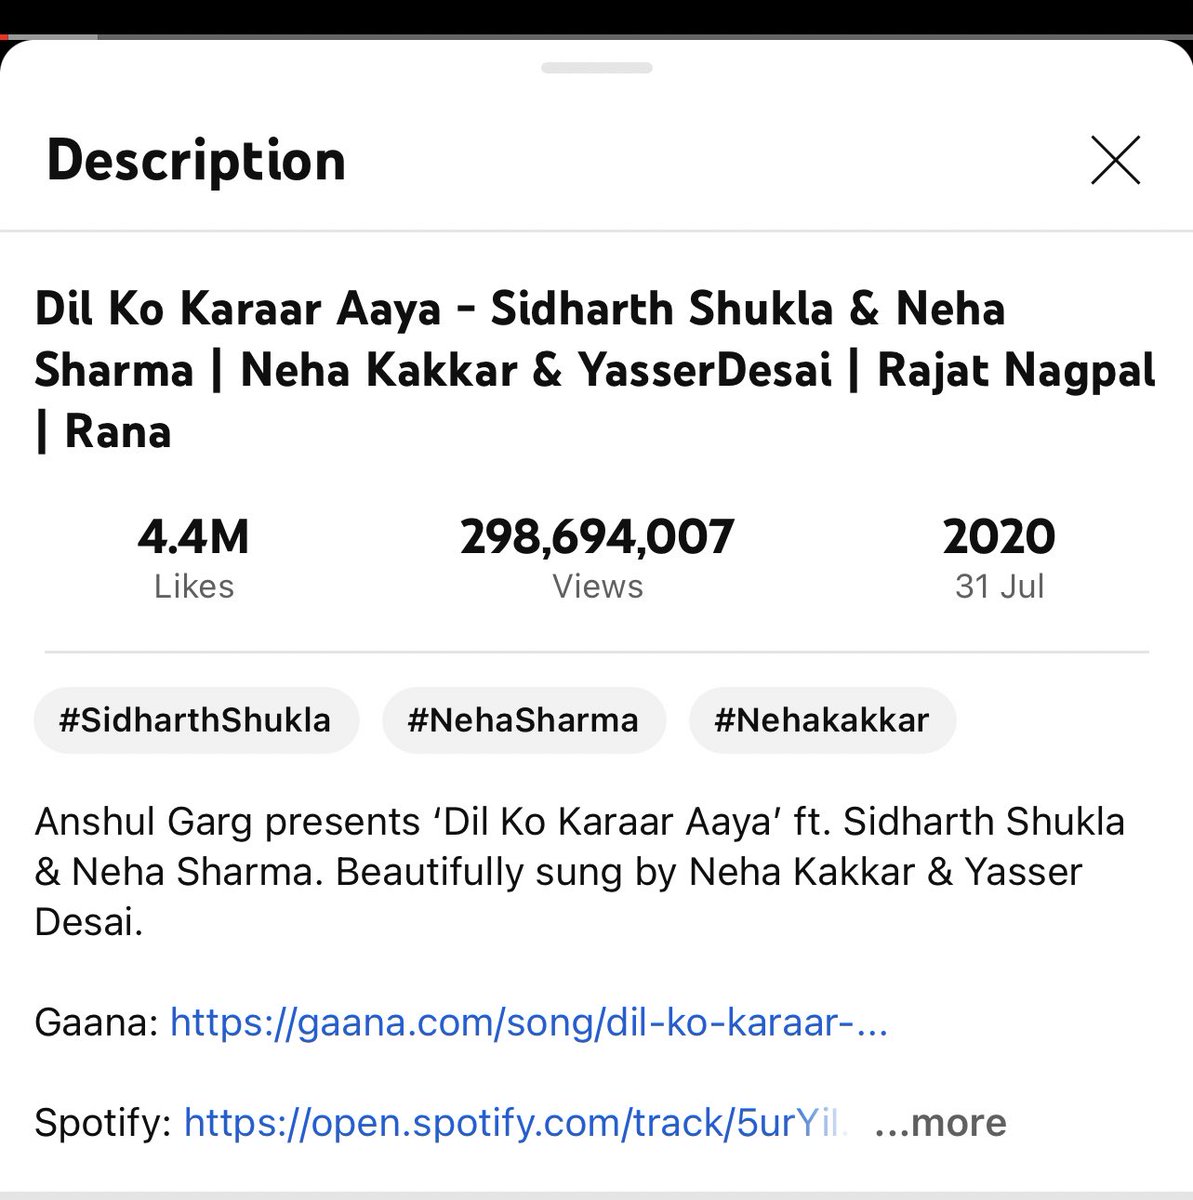 Keep streaming guys 
 🎶  #DilKoKaraarAaya  🎶
          Latest view count...
             298,694,007

#SidharthShukla  #SidHearts